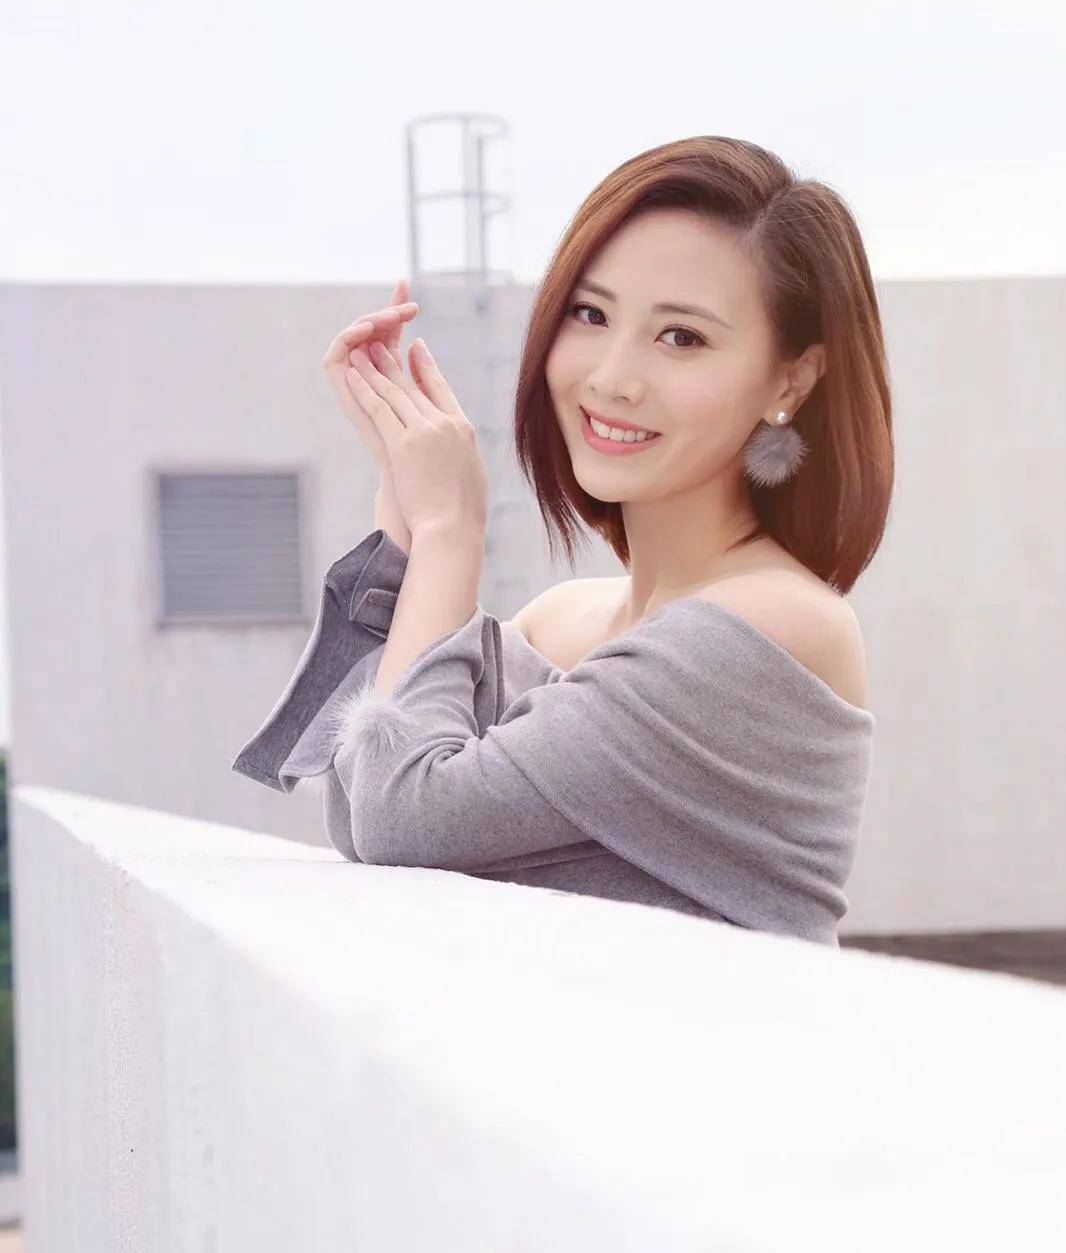 原创出生于苏州的2011年香港小姐冠军朱晨丽